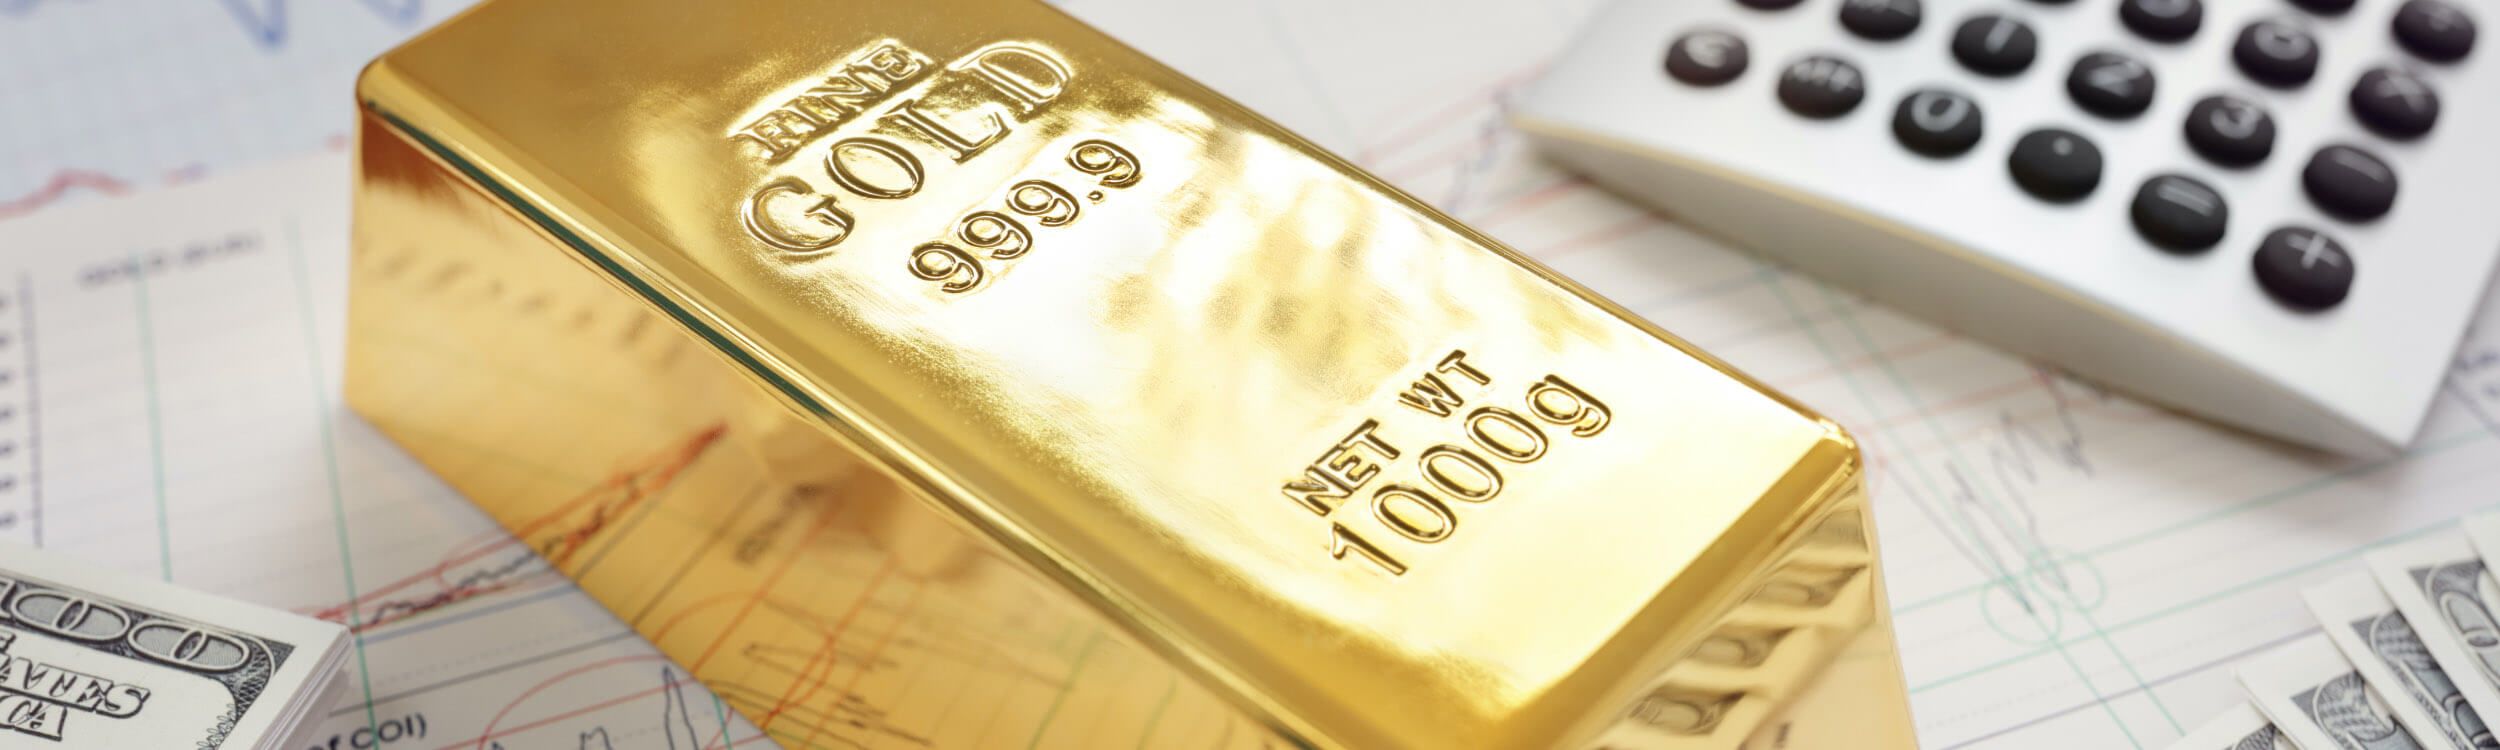 Was wirft Gold langfristig ab?